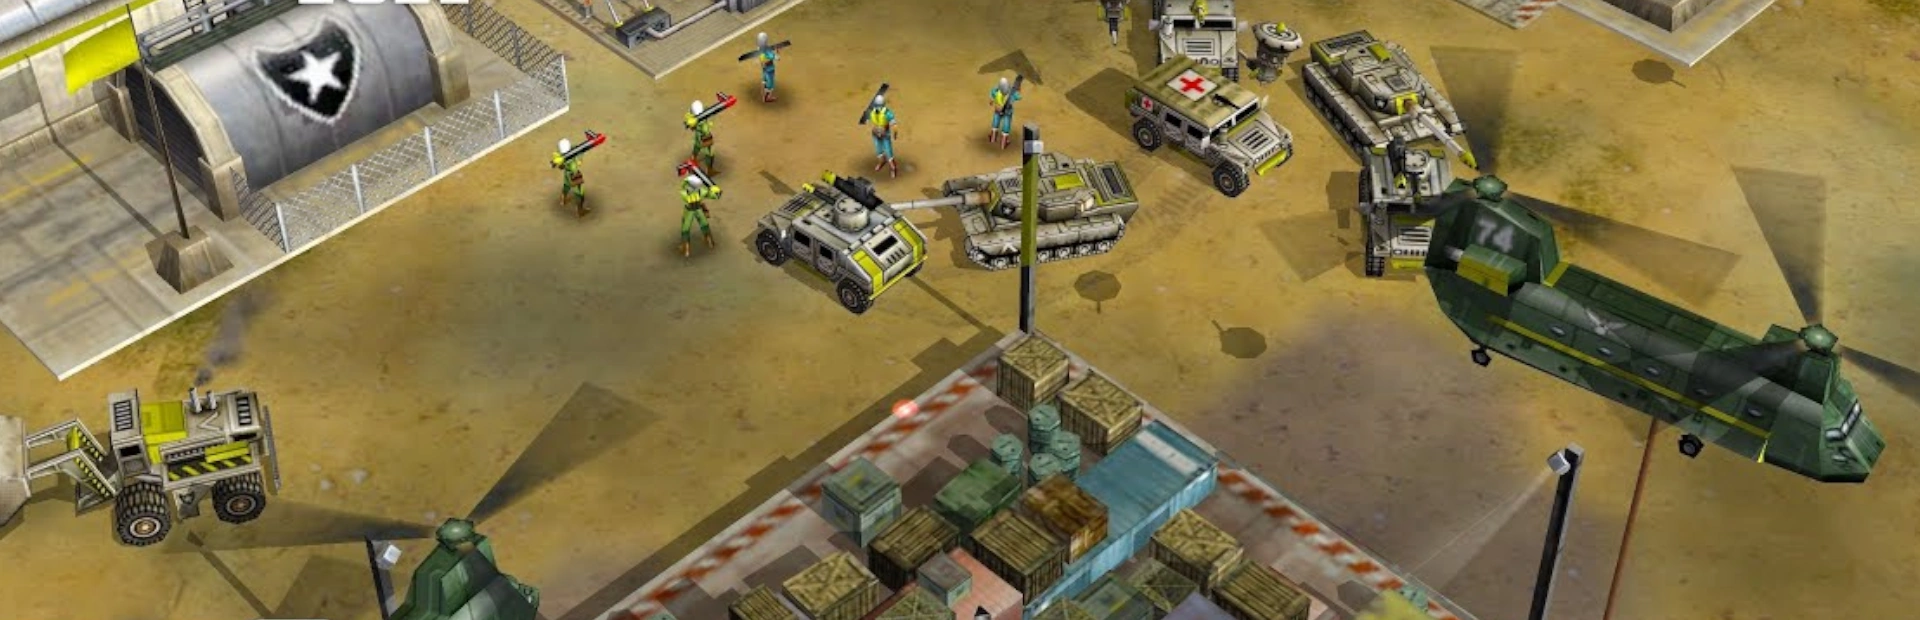 دانلود بازی Command and Conquer: Generals – Zero Hour برای کامپیوتر | گیمباتو